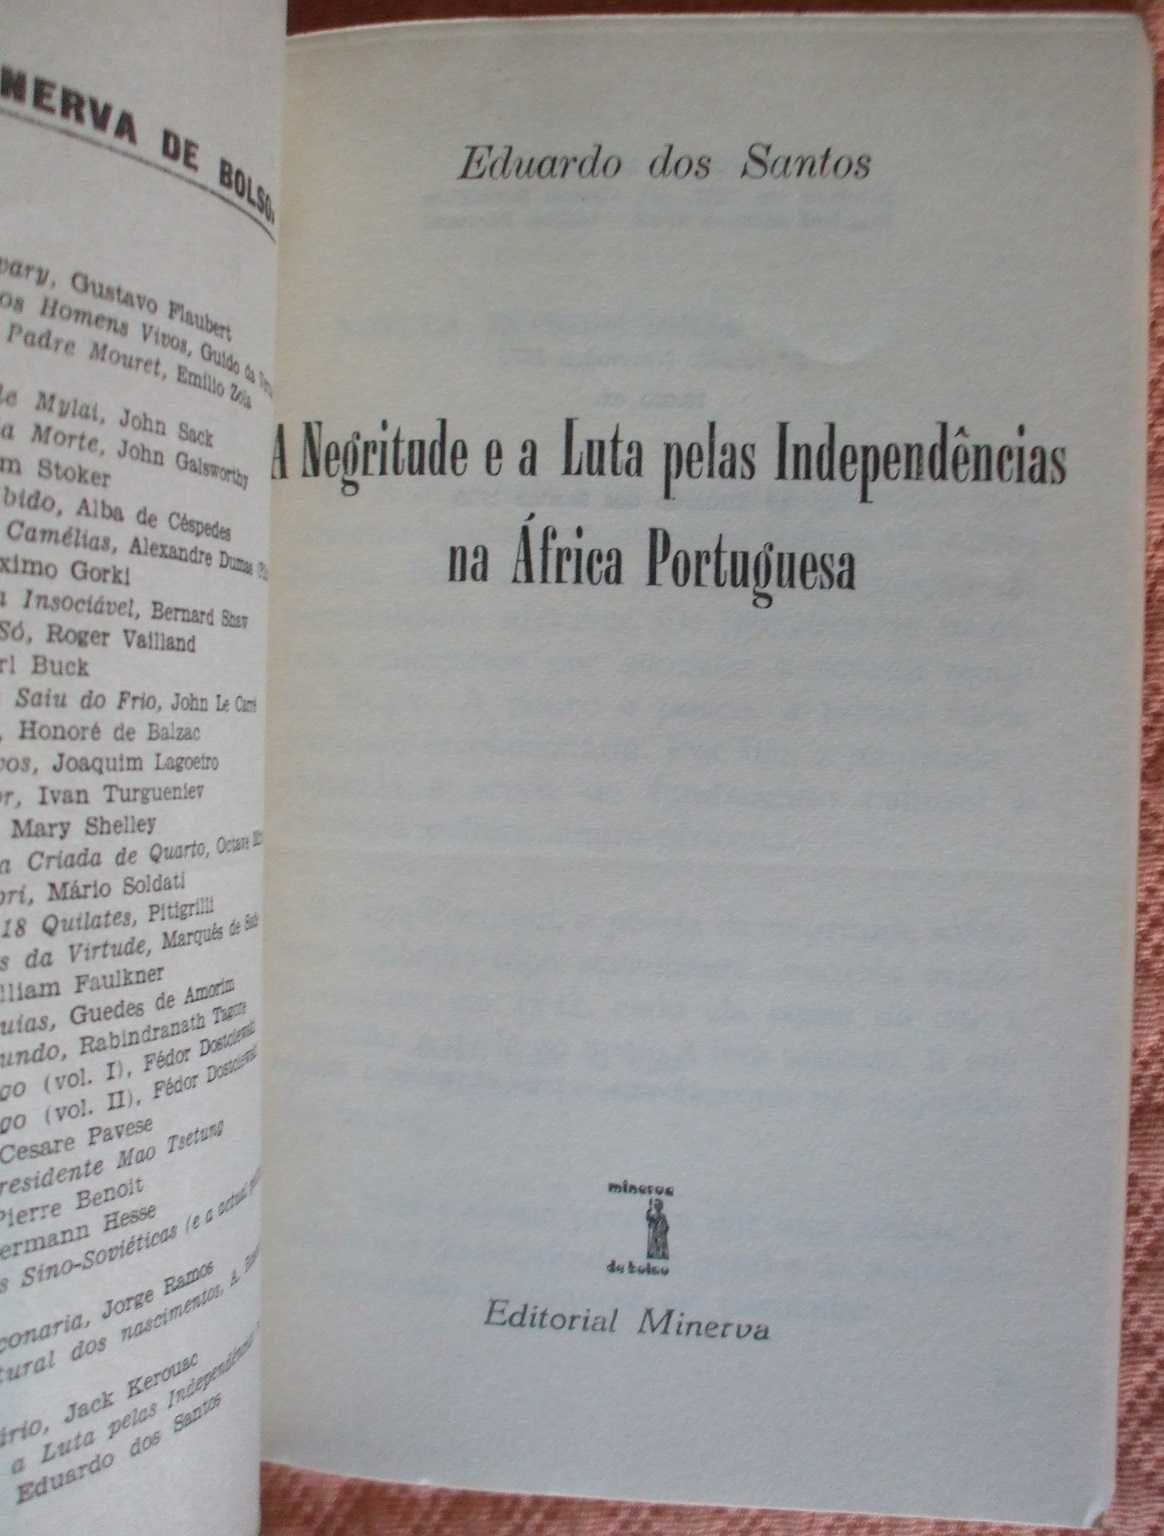 A negritude e a luta pelas independências na África portuguesa